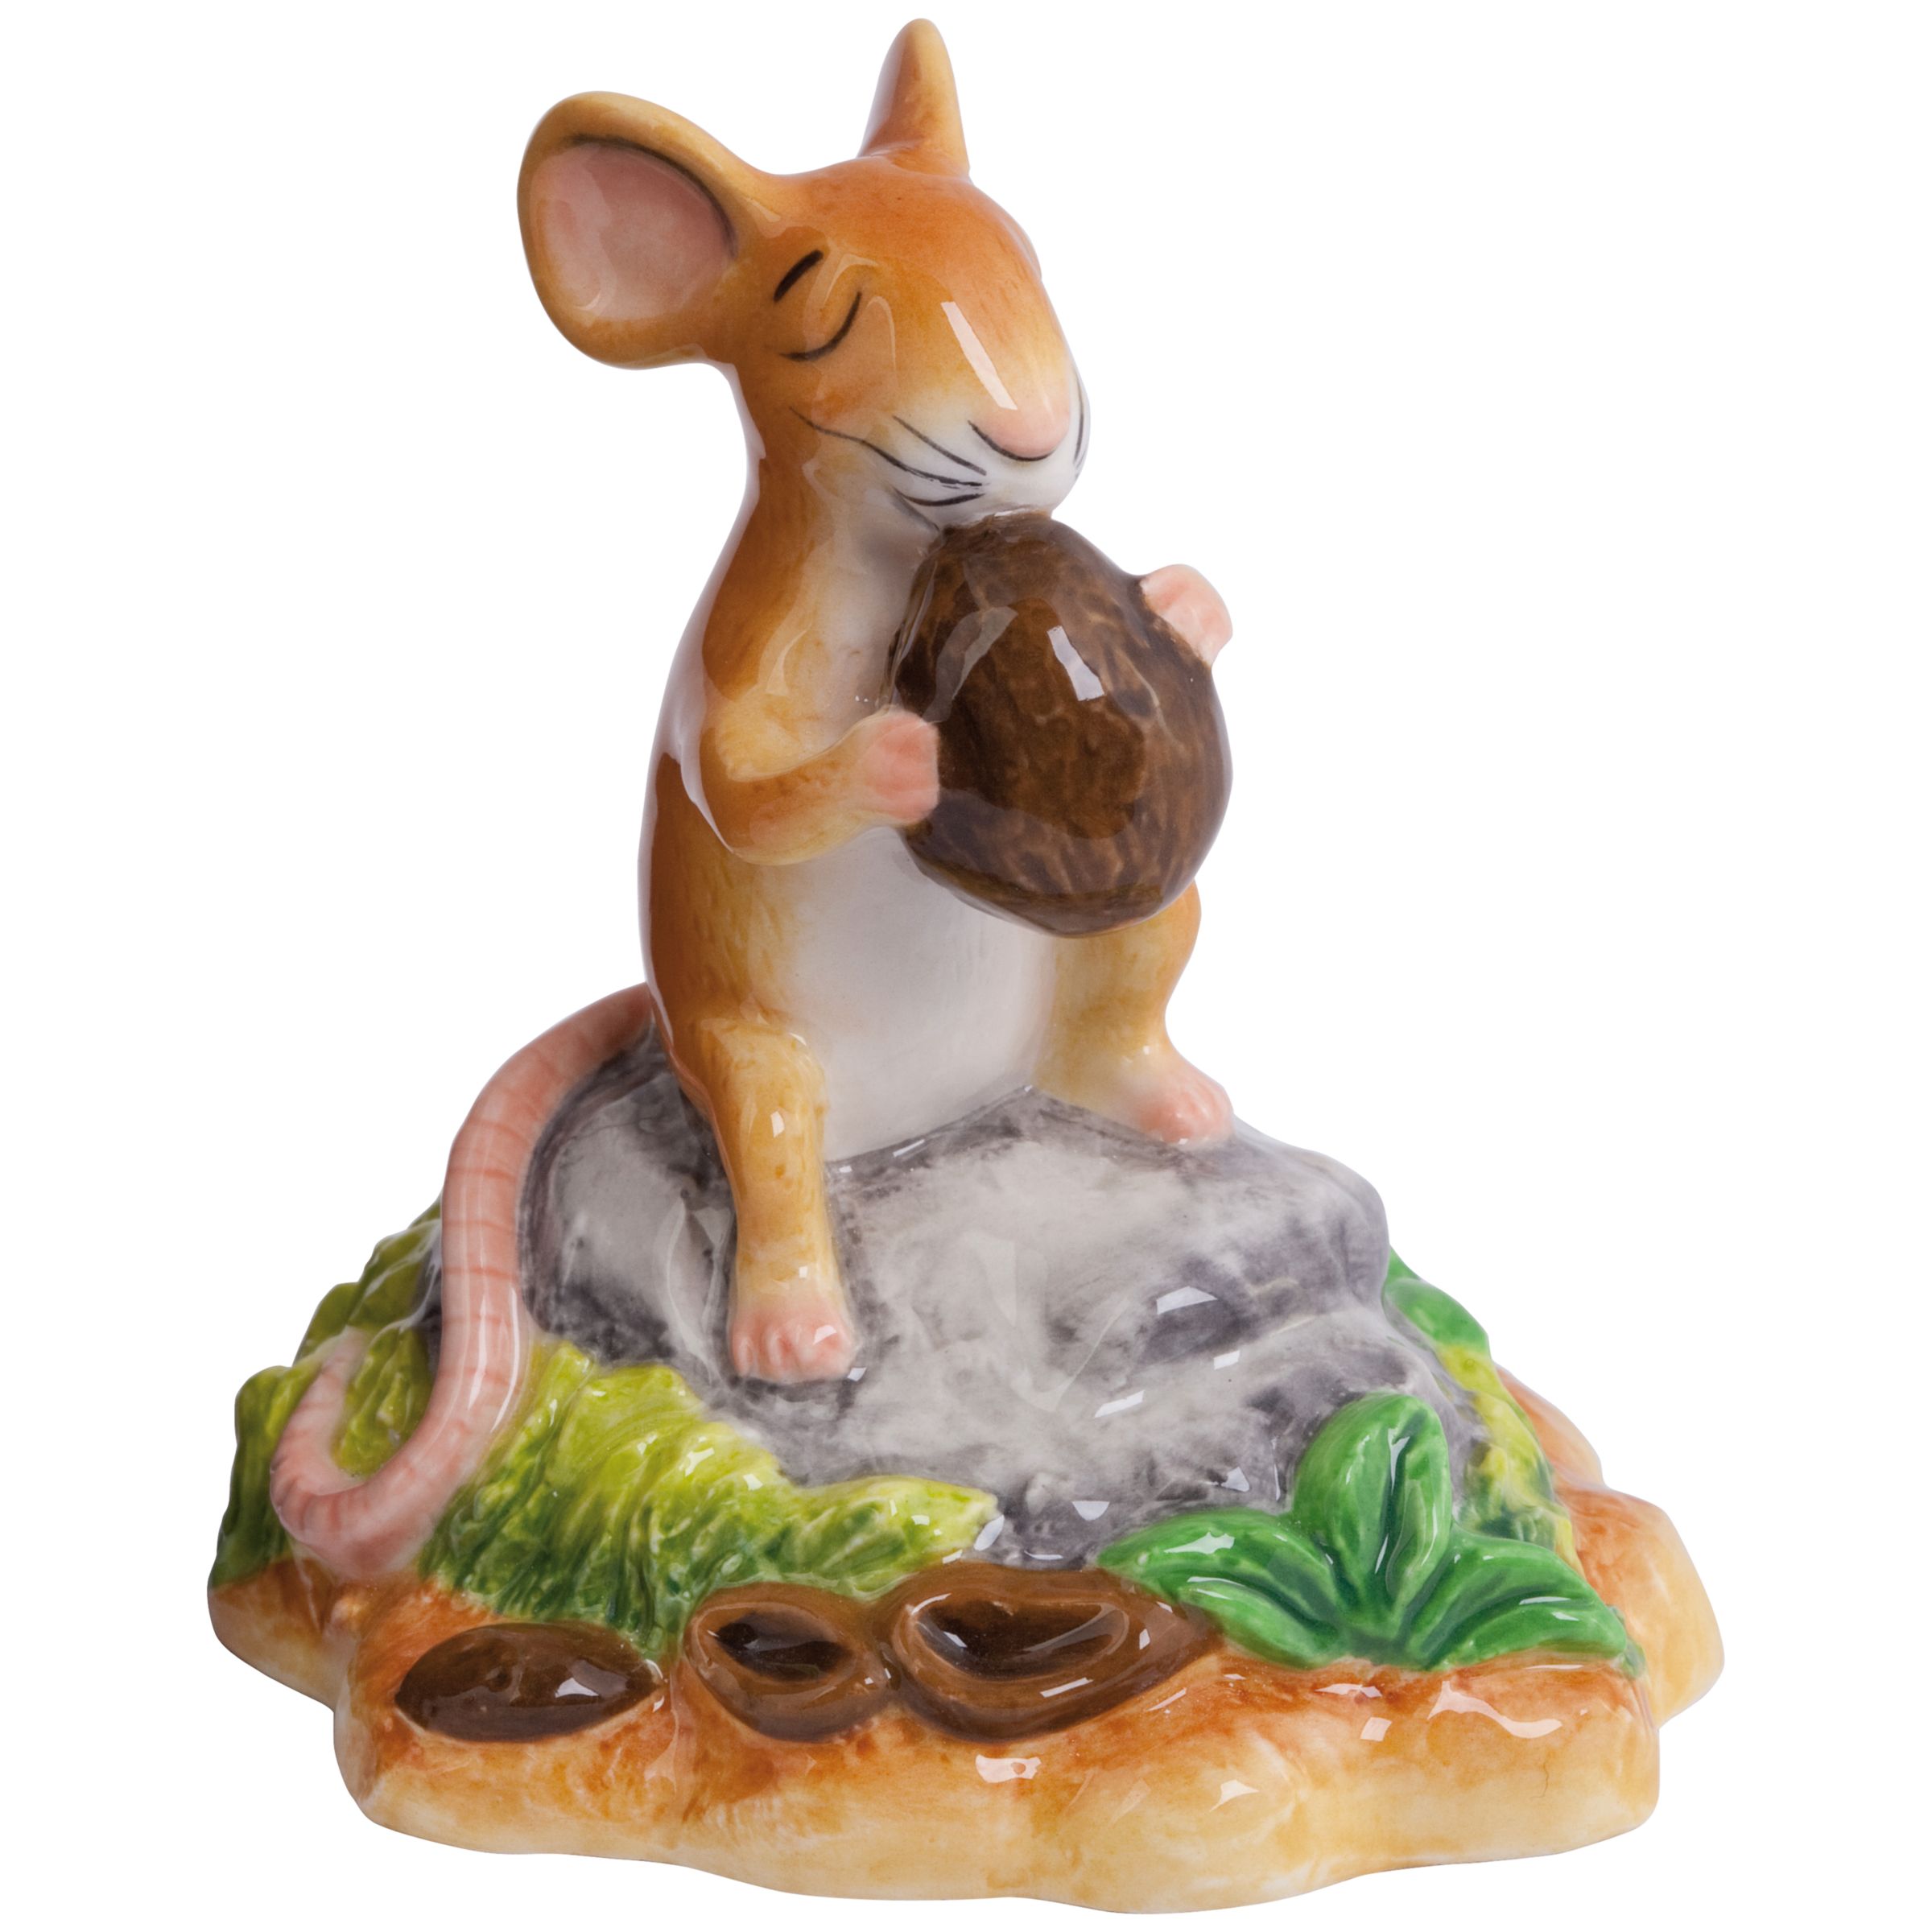 gruffalo mouse toy